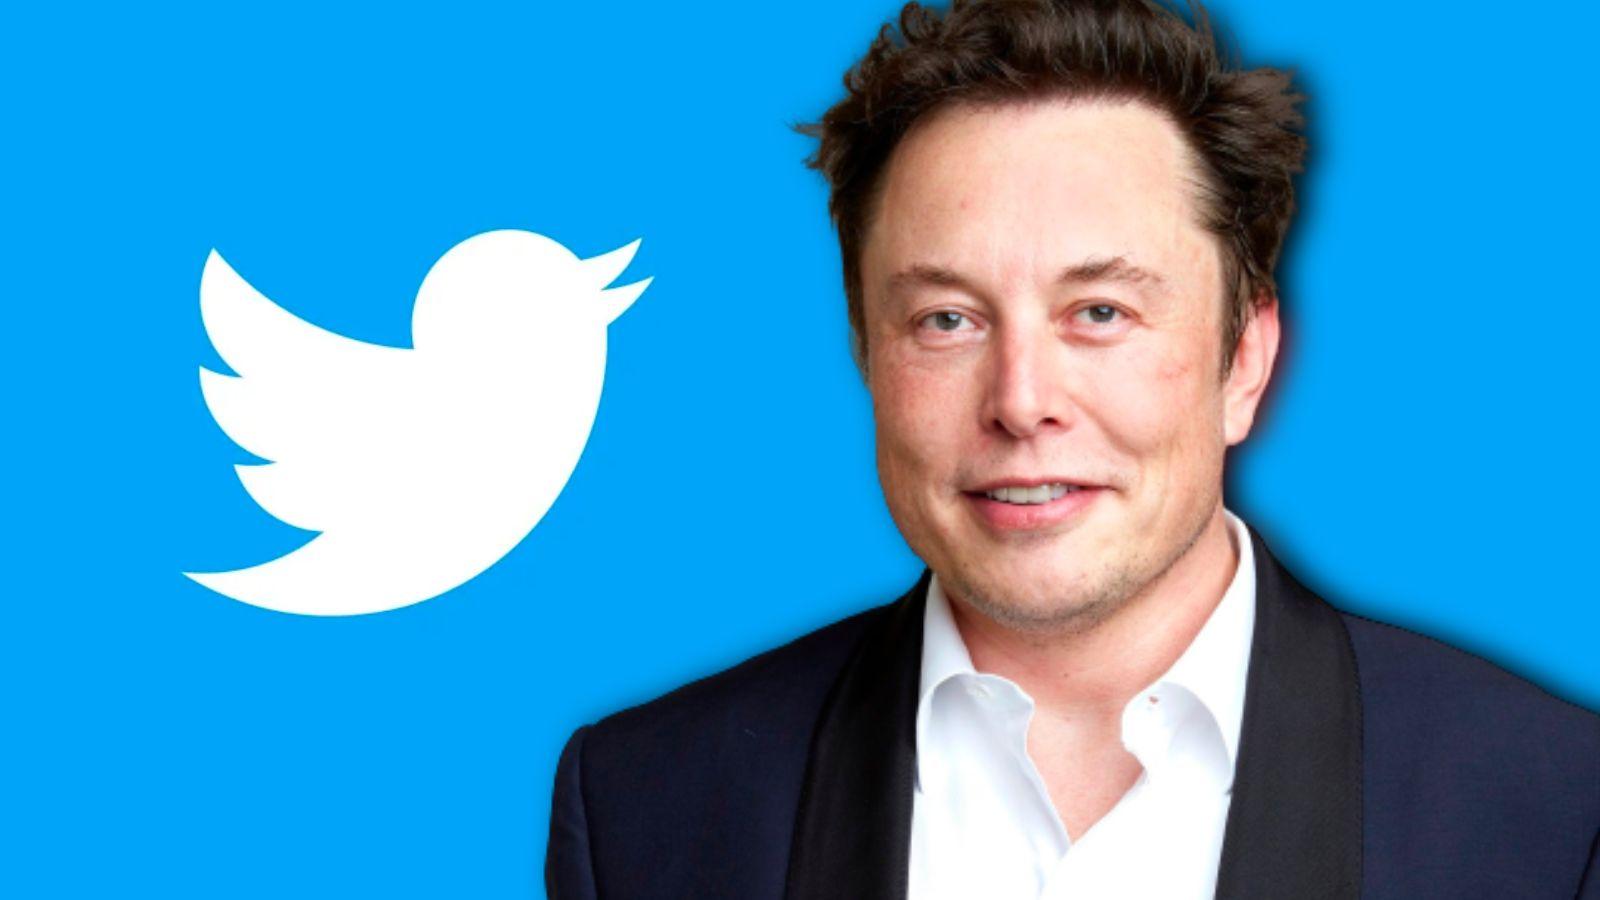 Elon Musk quit Twitter